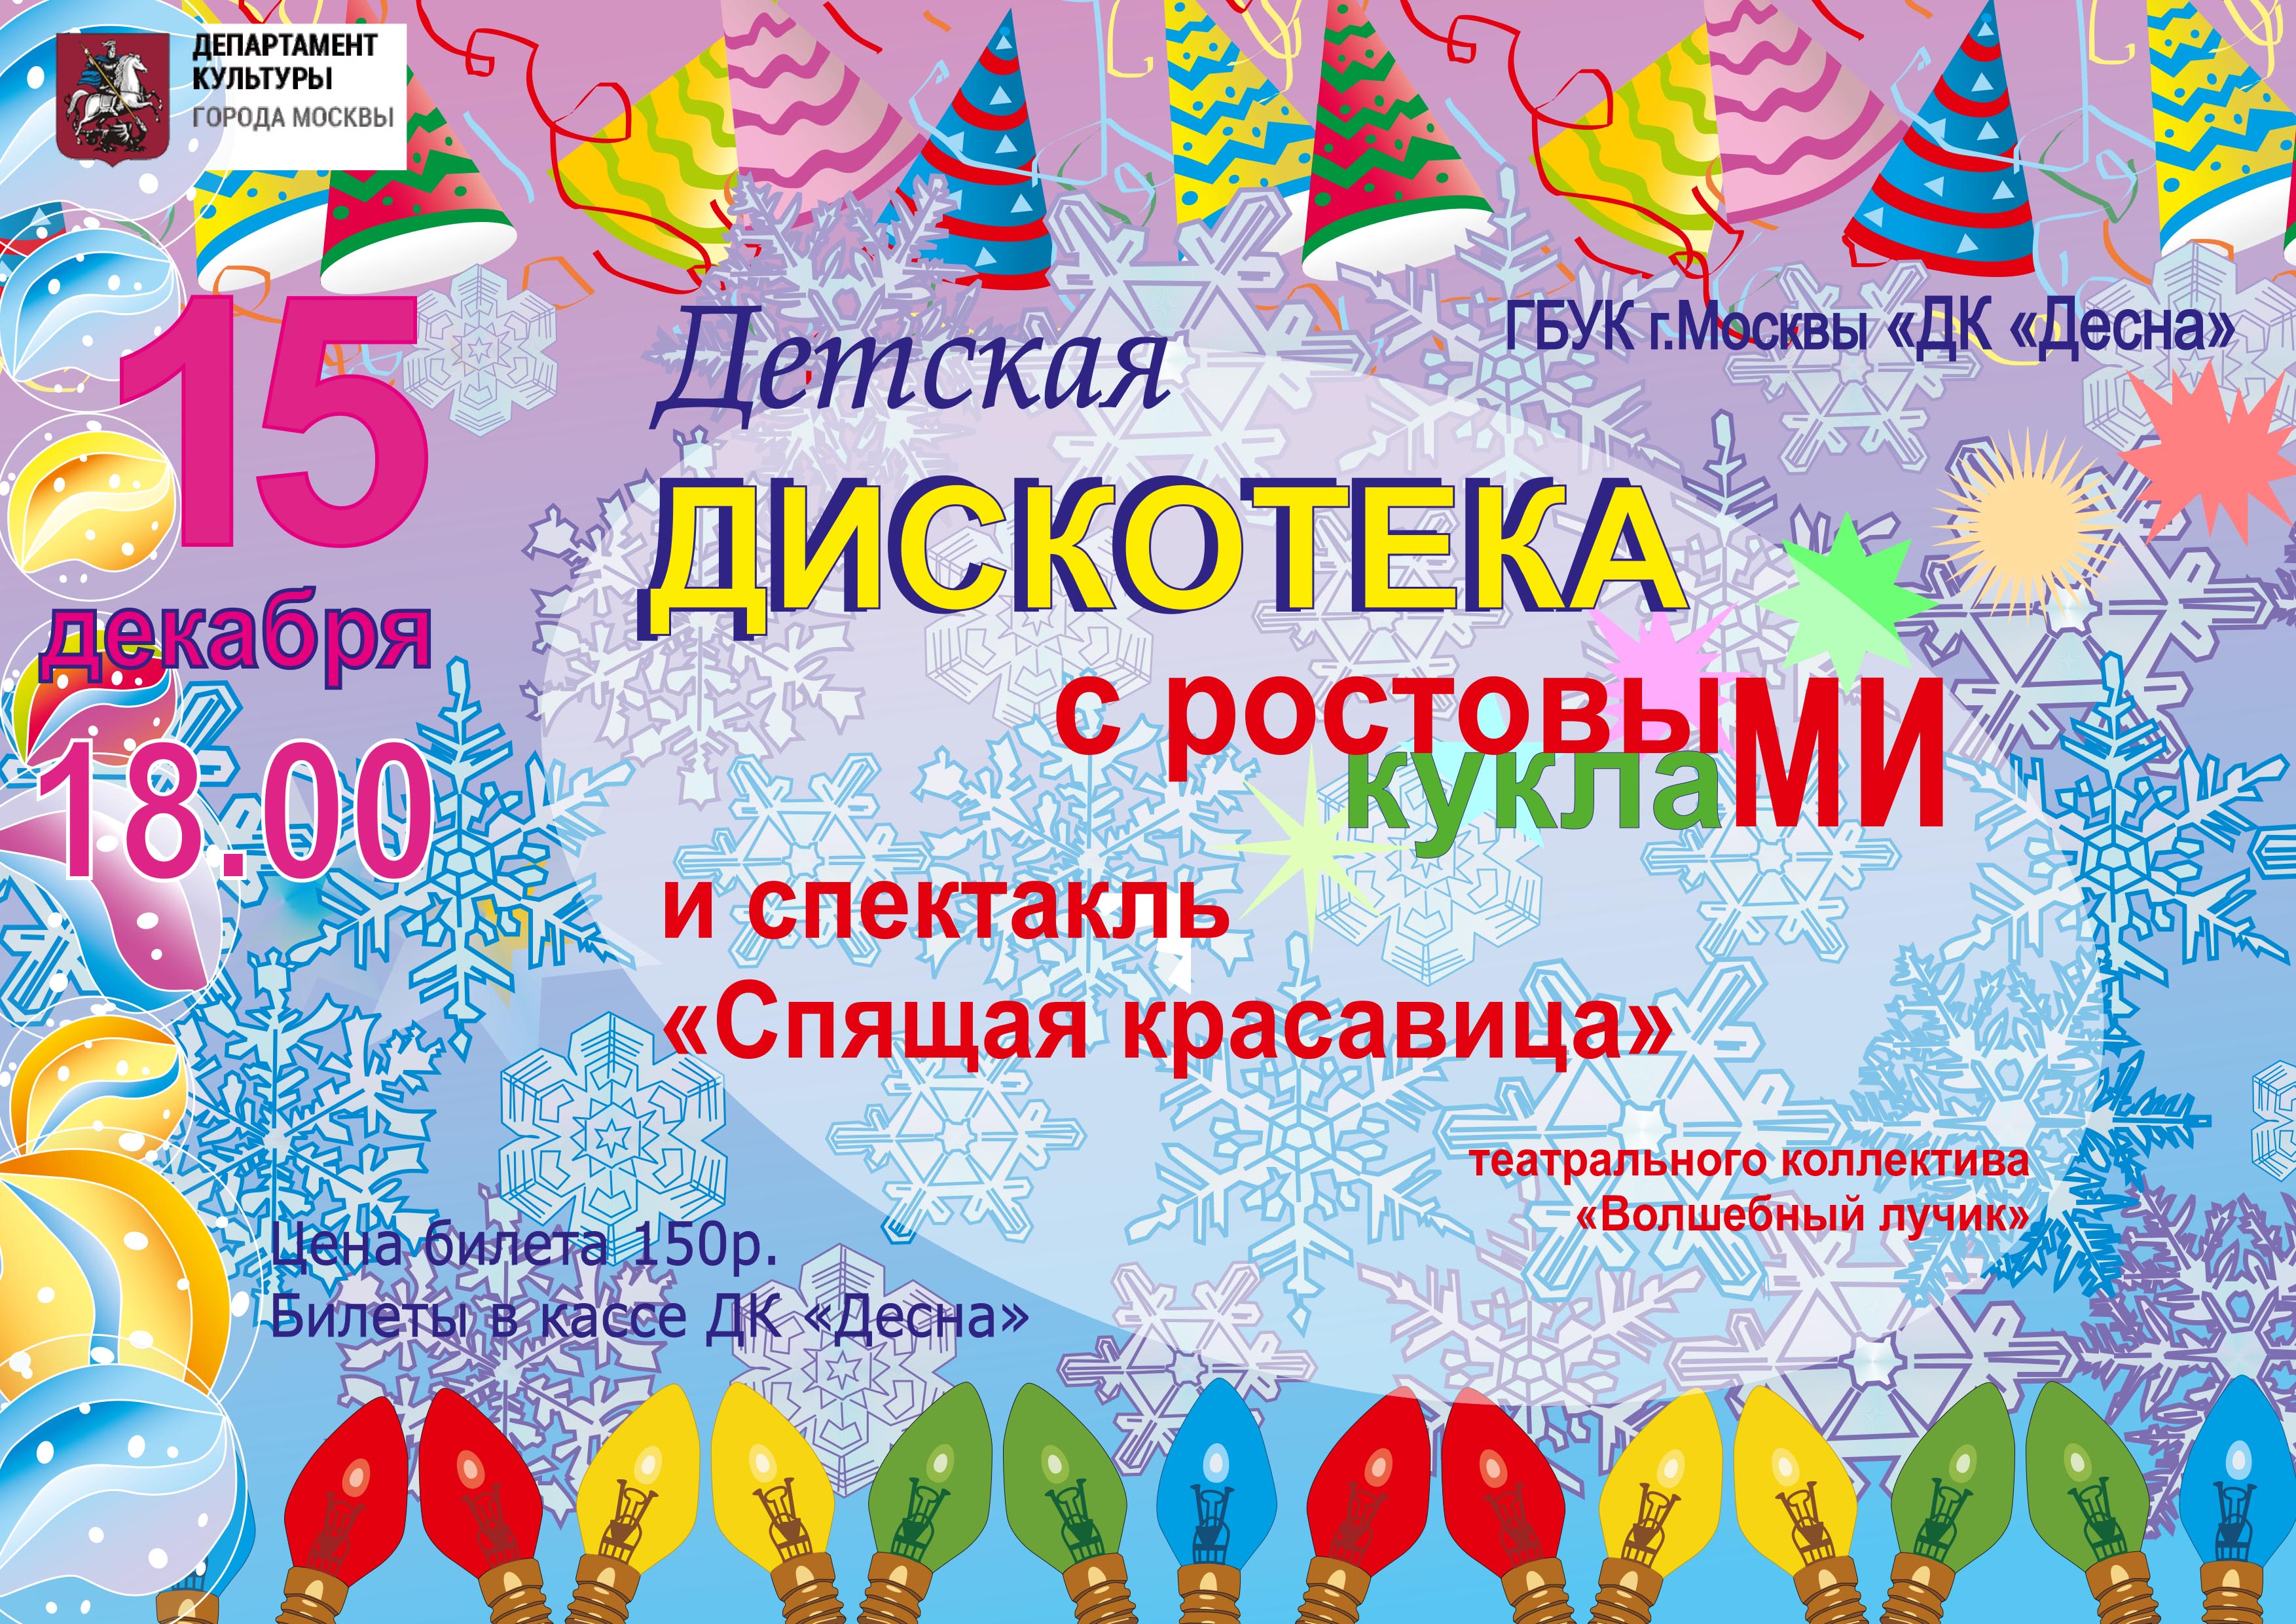 15 декабря в 18:00 в ГБУК г. Москвы "ДК "Десна" пройдет детская дискотека с ростовыми куклами, после которой будет показан спектакль "Спящая красавица"